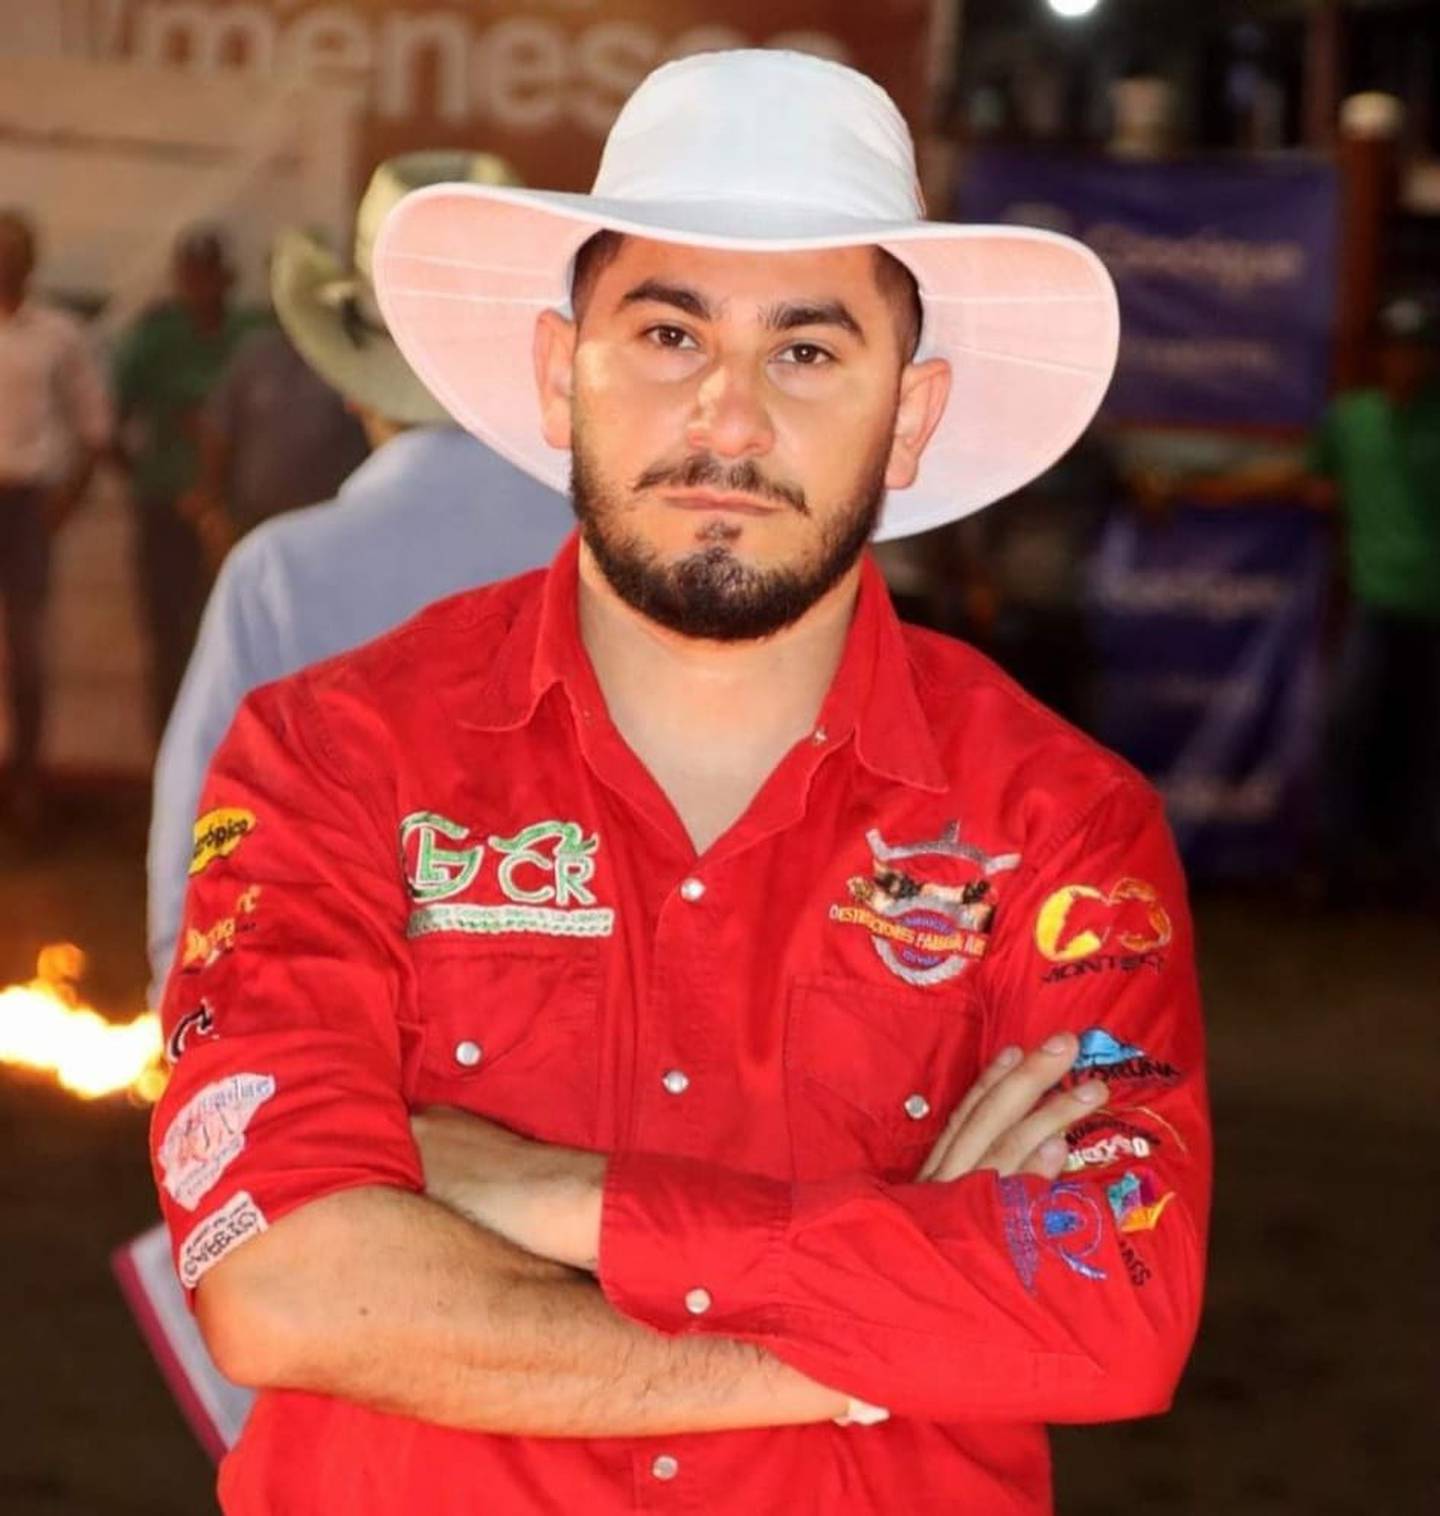 Belquin Duney Pérez Arce era un apasionado y reconocido montador en la zona norte del país, murió al ser golpeado por un toro en las fiestas de Guatuso, Alajuela. Foto: Guatuso 24/7